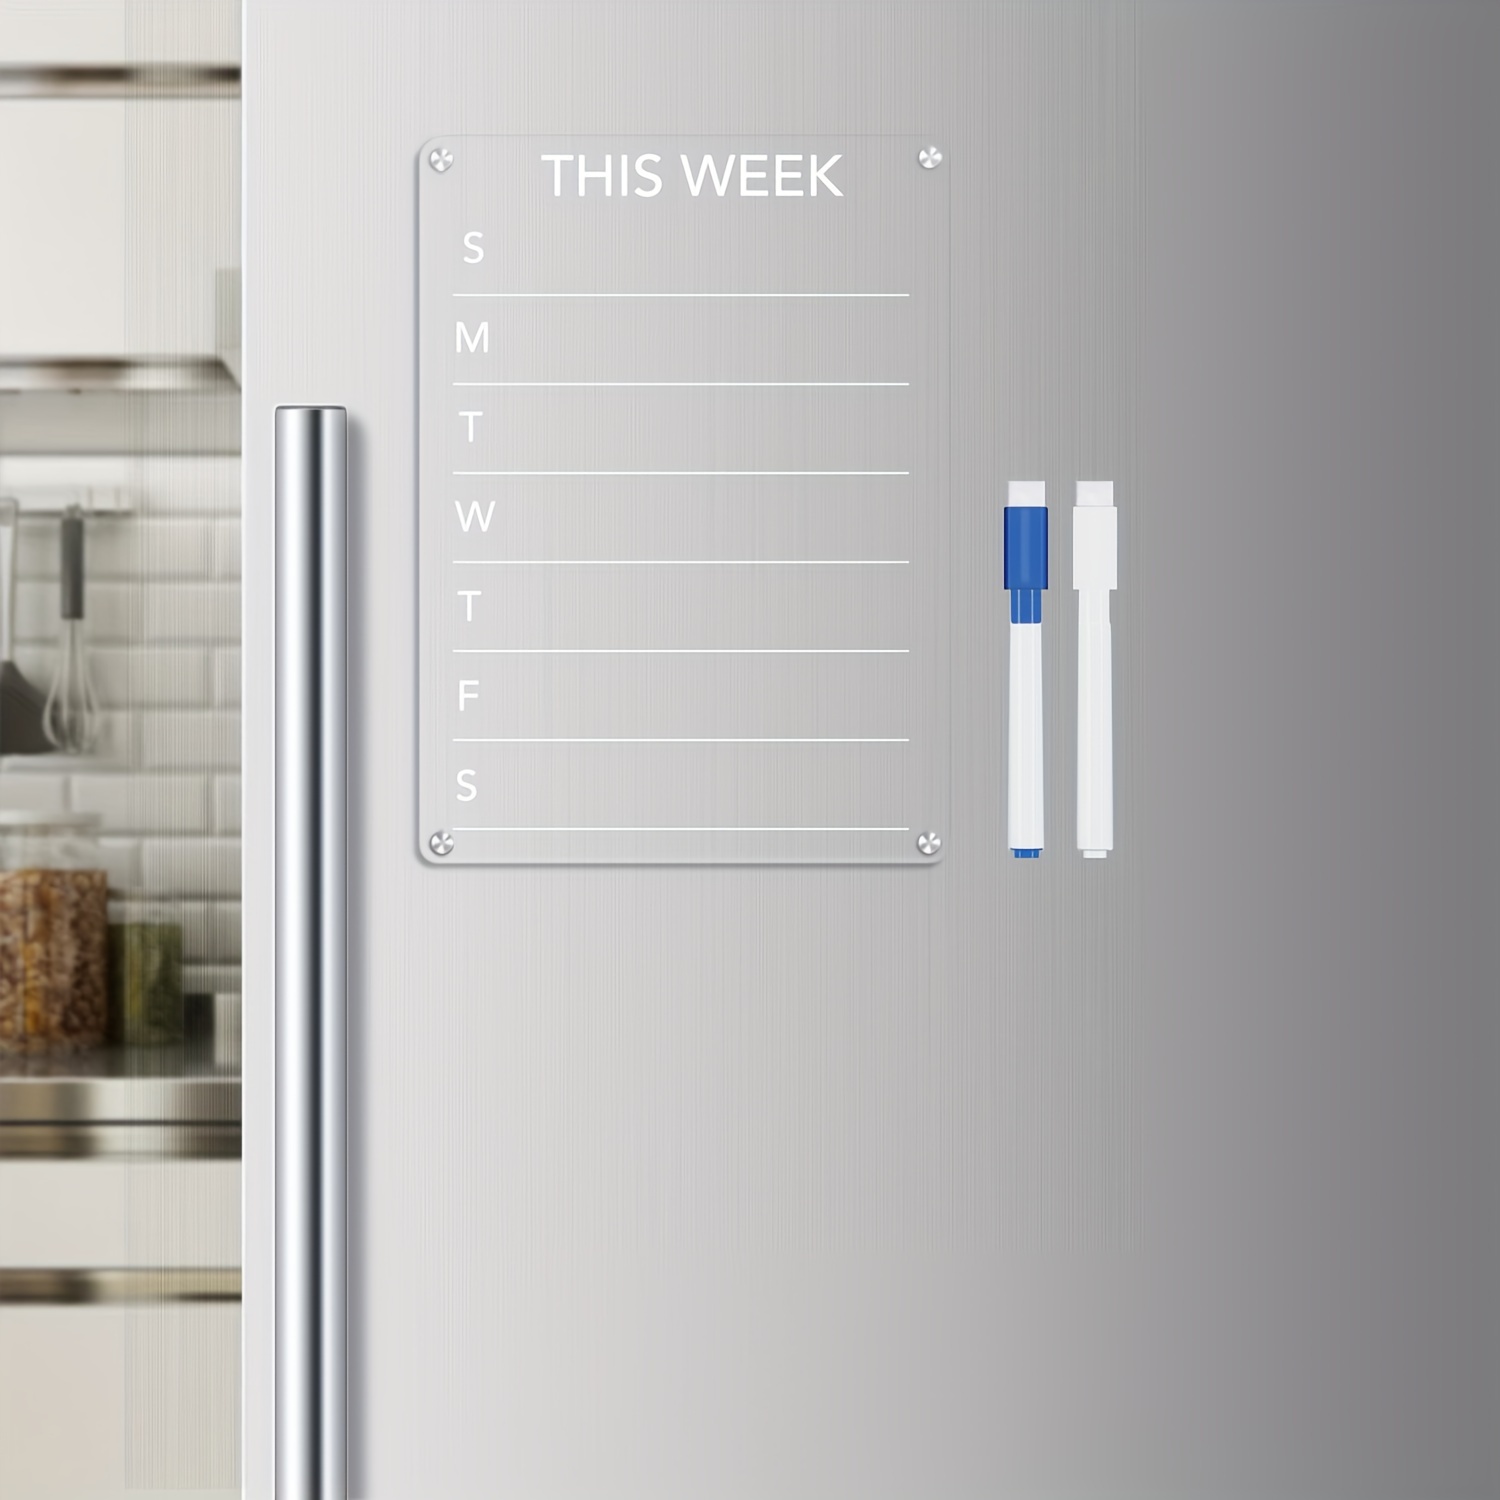 Tableau blanc magnétique pour réfrigérateur, menu hebdomadaire